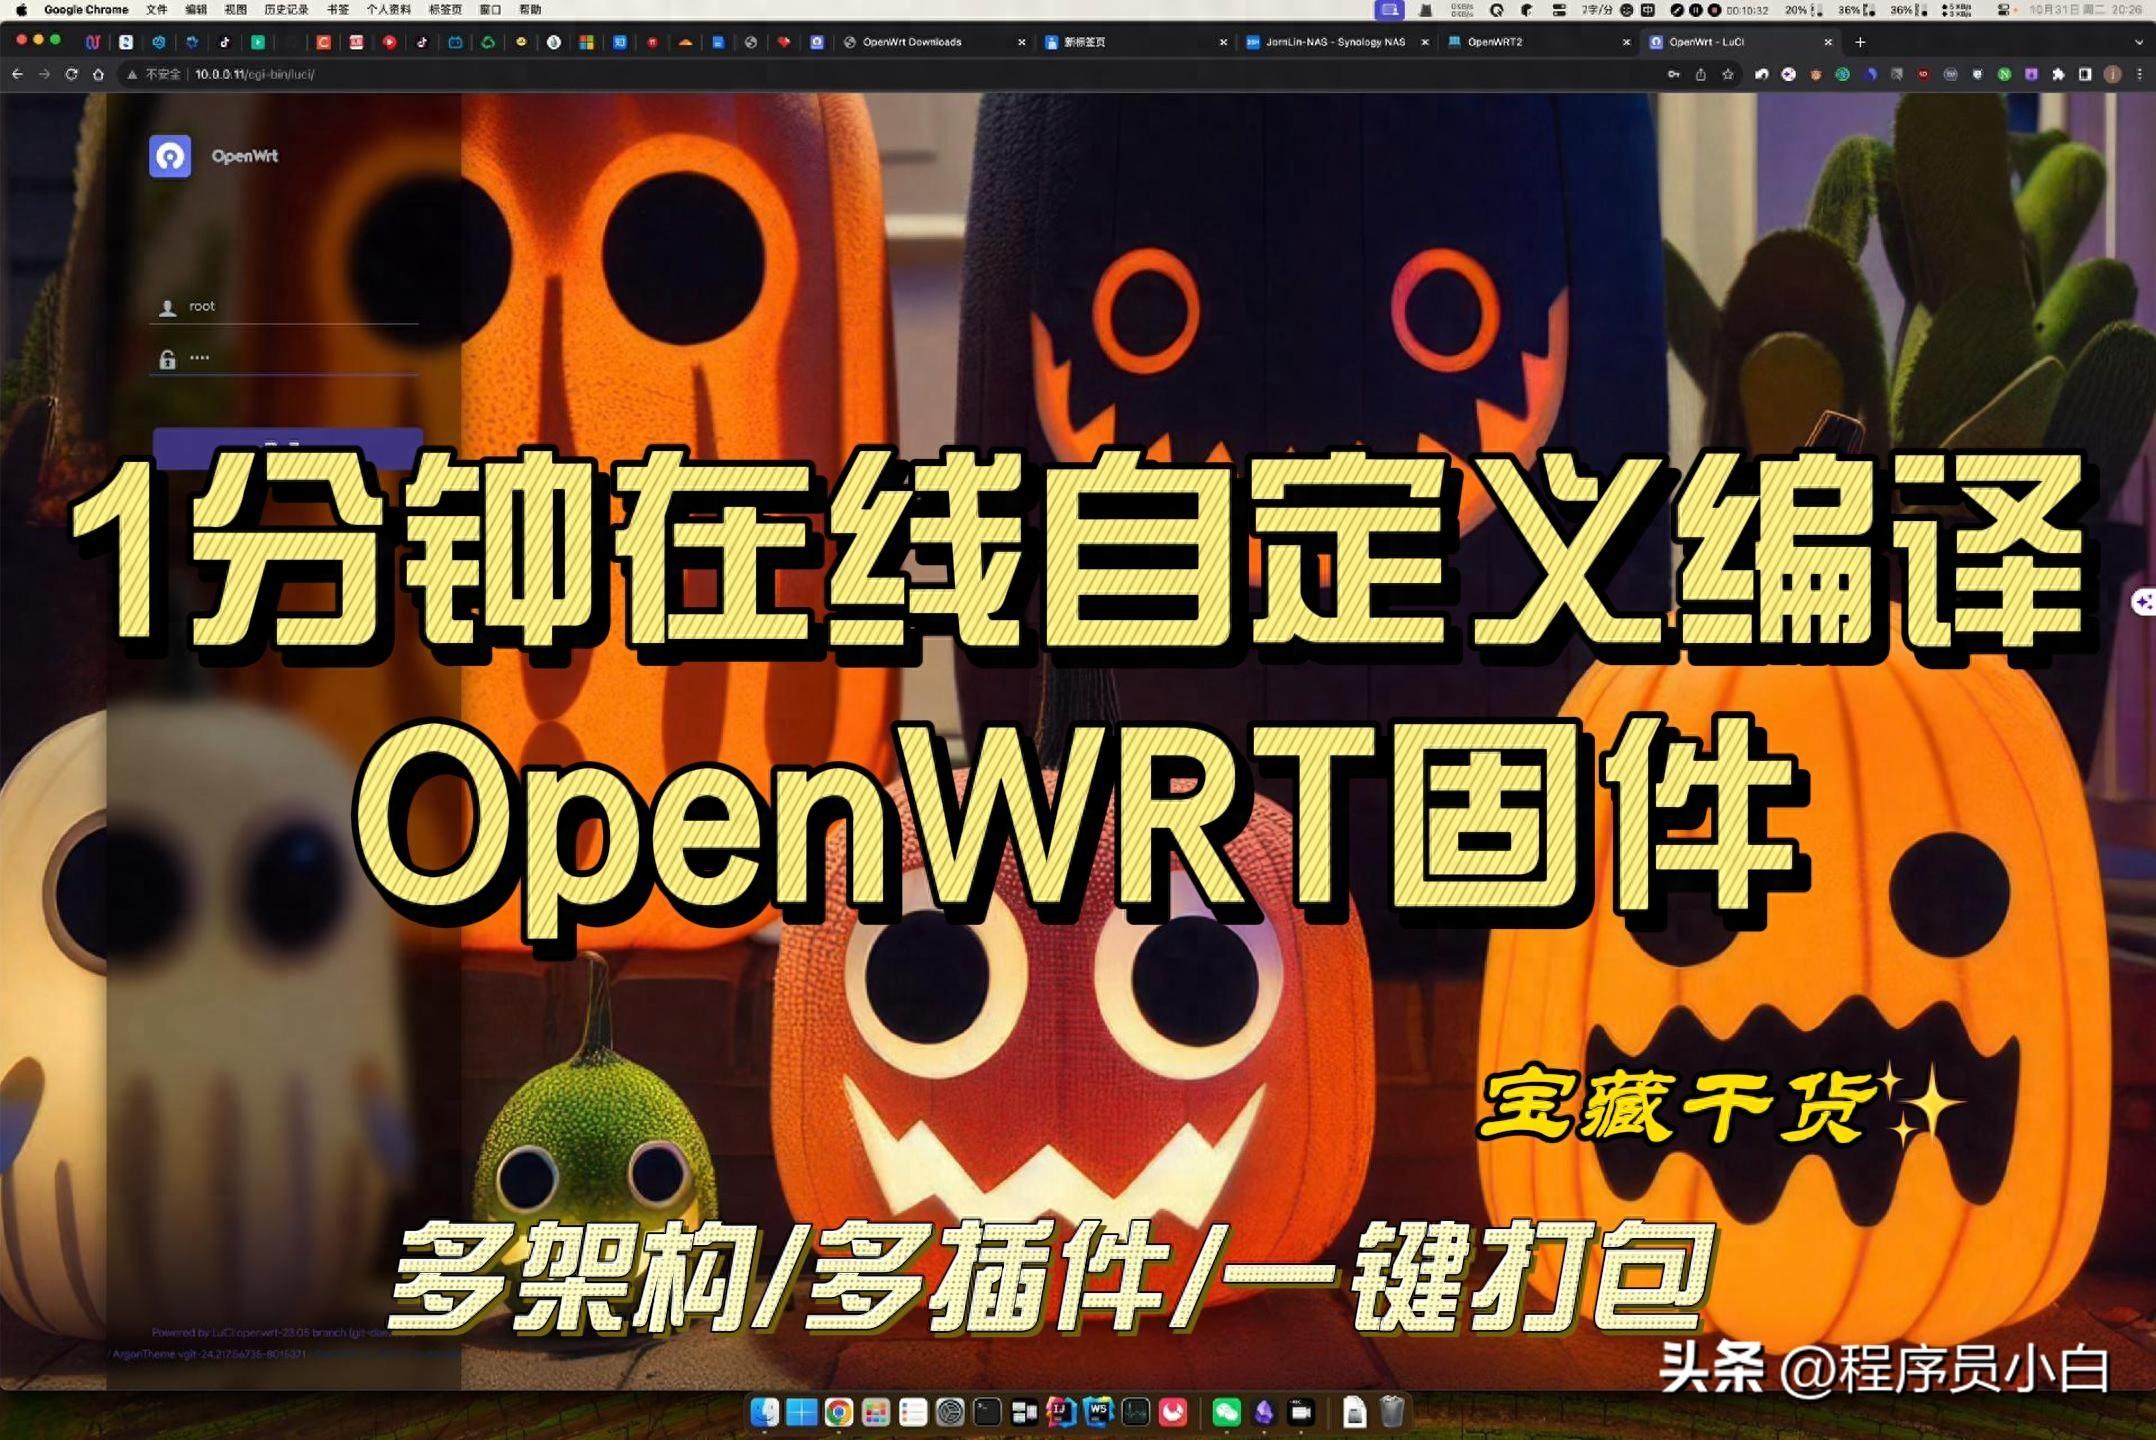 openwrt固件下载地址(软路由固件大全)